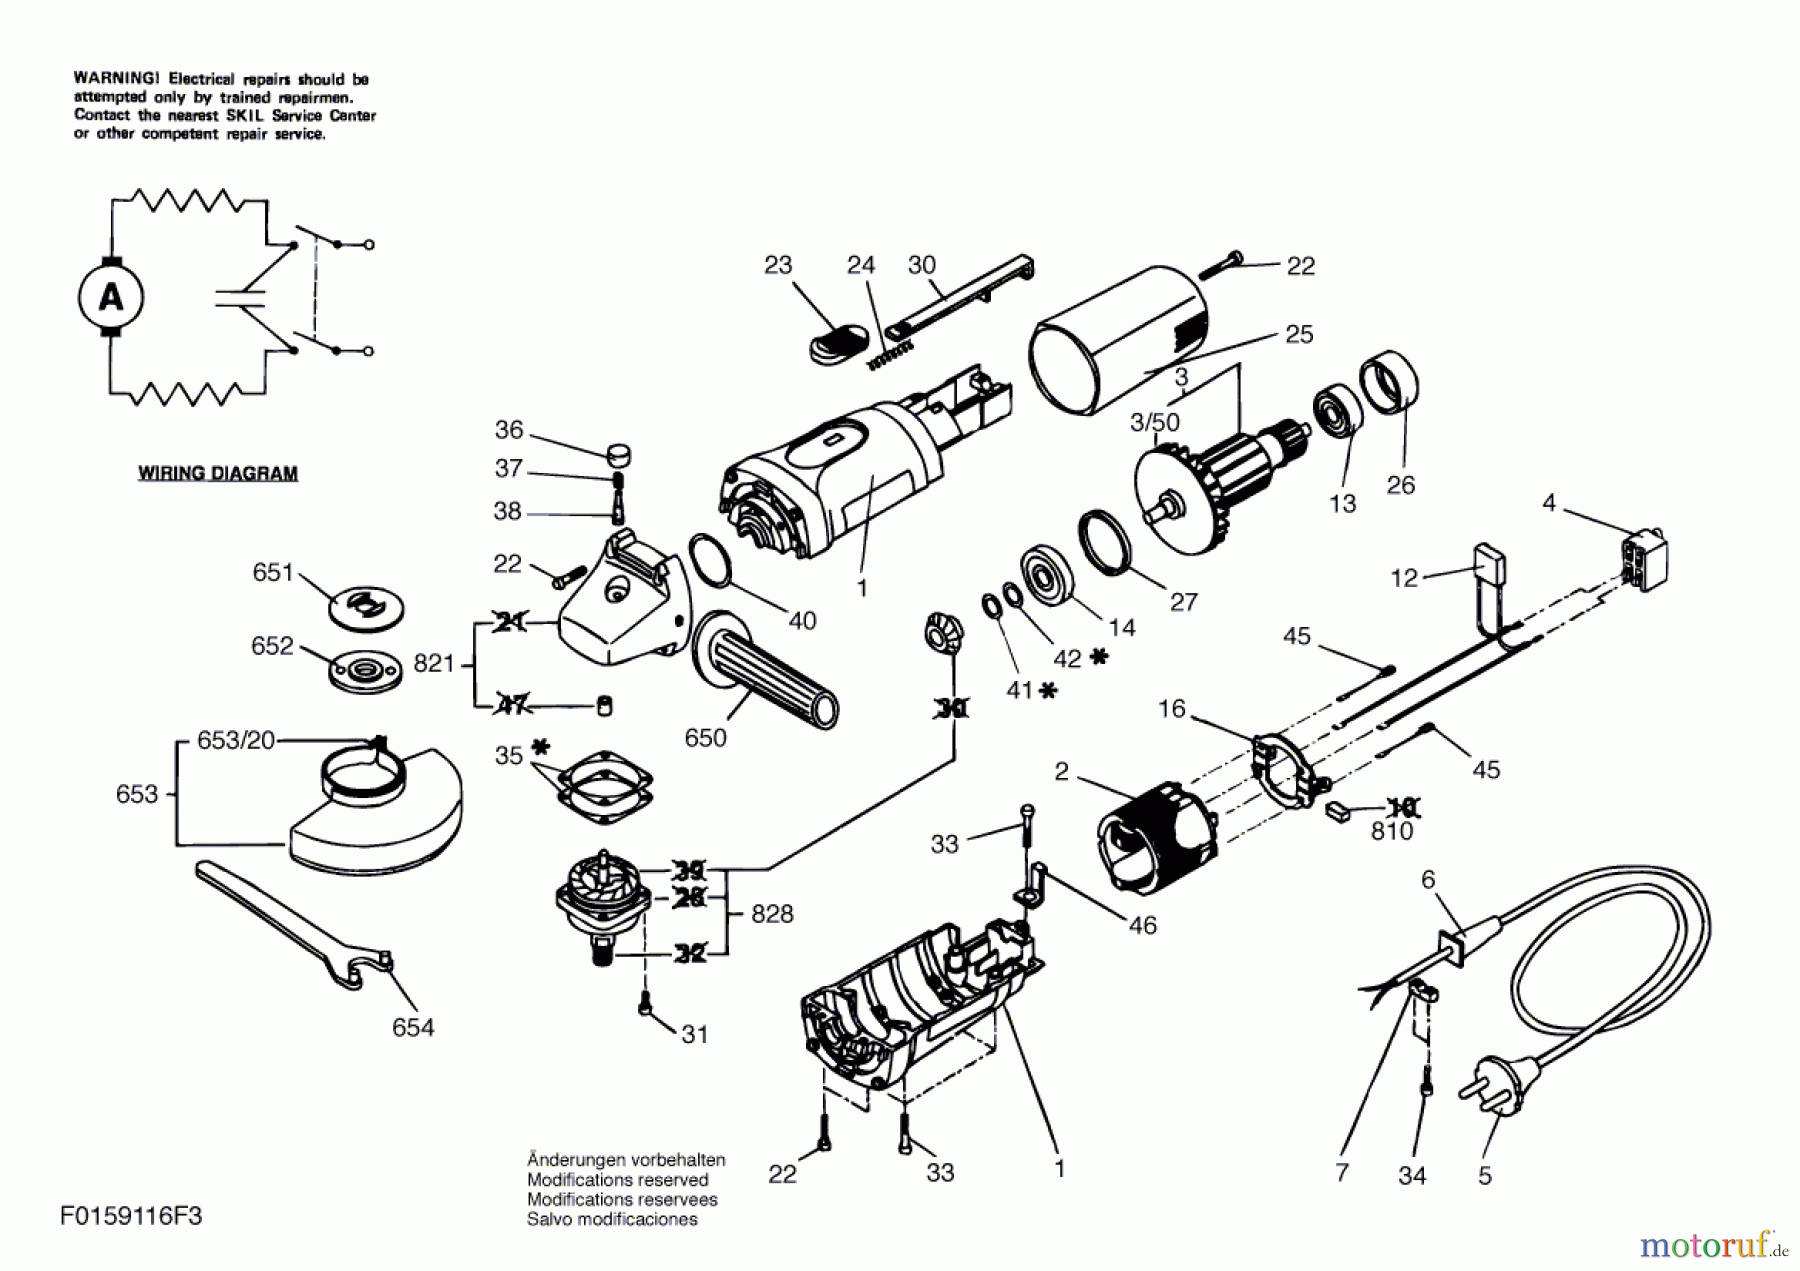  Bosch Werkzeug Hw-Winkelschleifer 9116 Seite 1